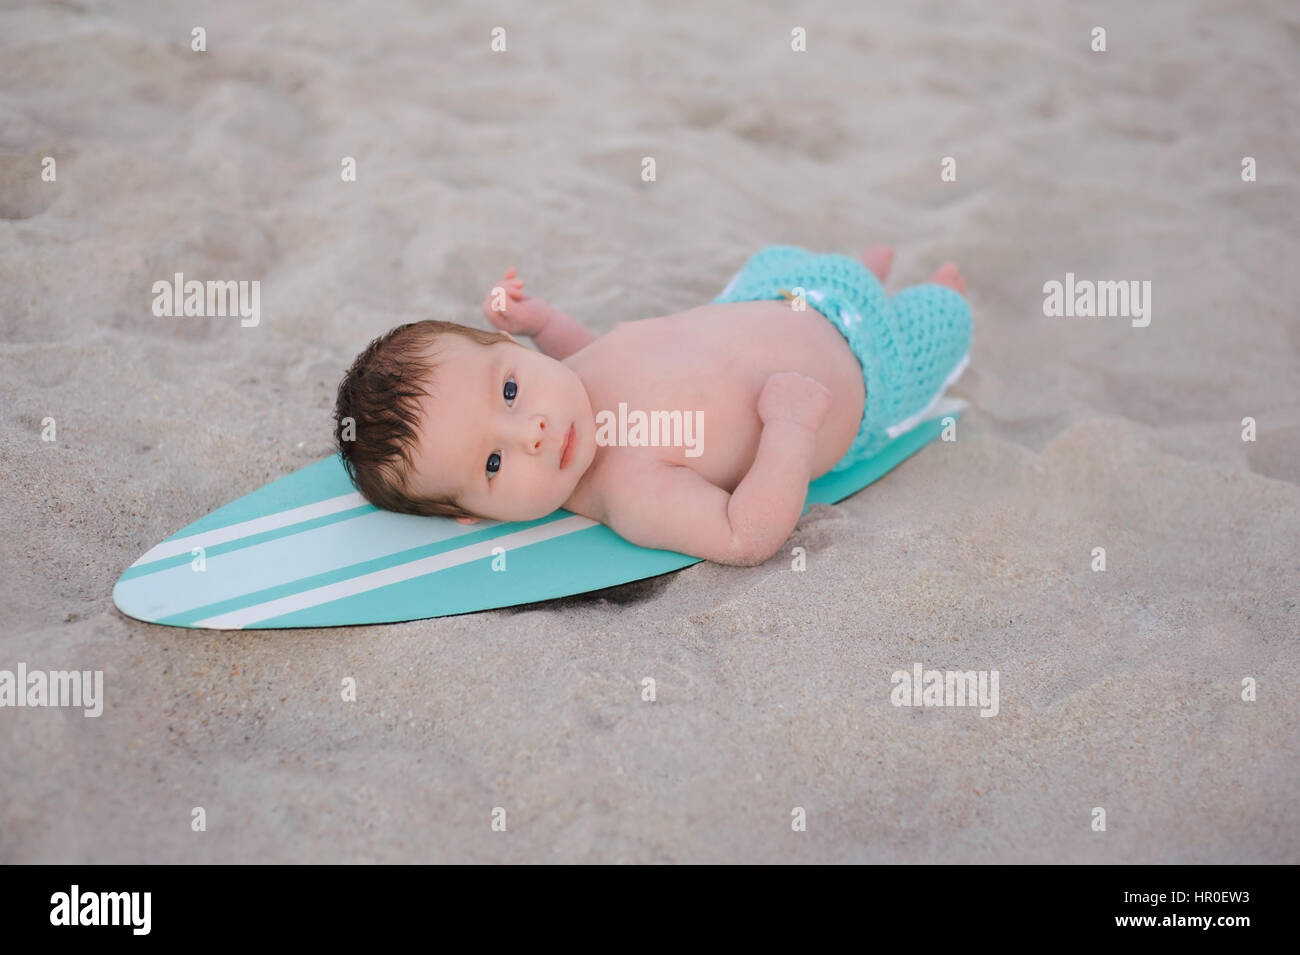 Zwei Wochen altes neugeborenes Baby junge auf einem winzigen, türkis blau-weißen Surfbrett liegend. Er trägt Aqua gefärbt, Boardshorts und liegt an einem Sandstrand Stockfoto